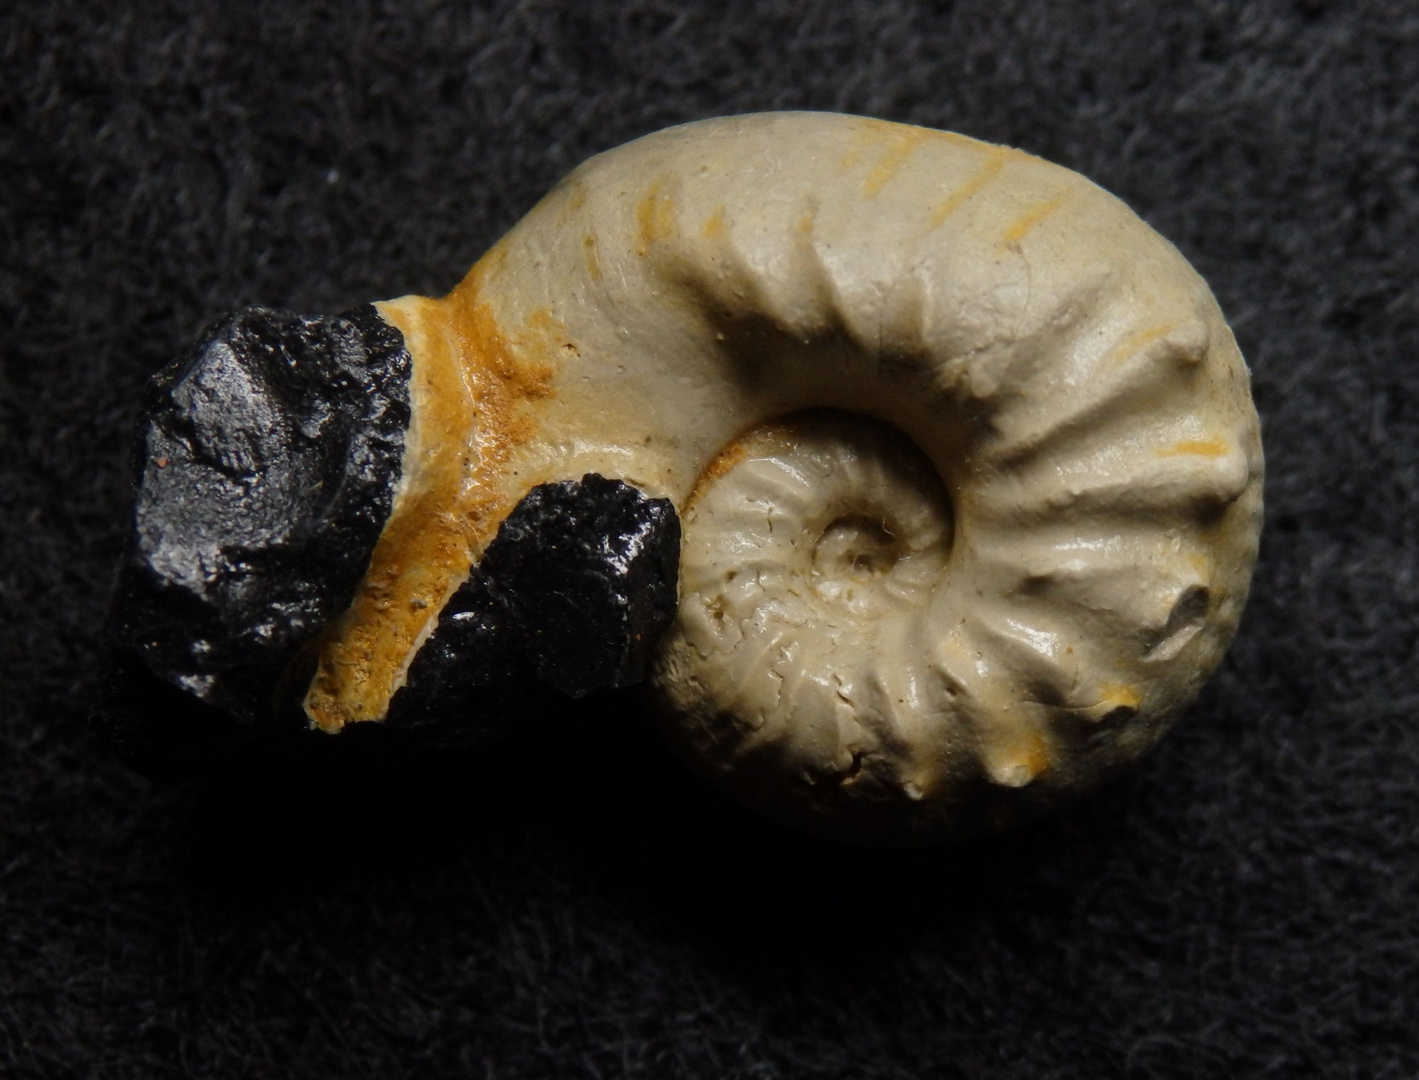 Ammonit aus der Jurazeit - Sutneria platynota